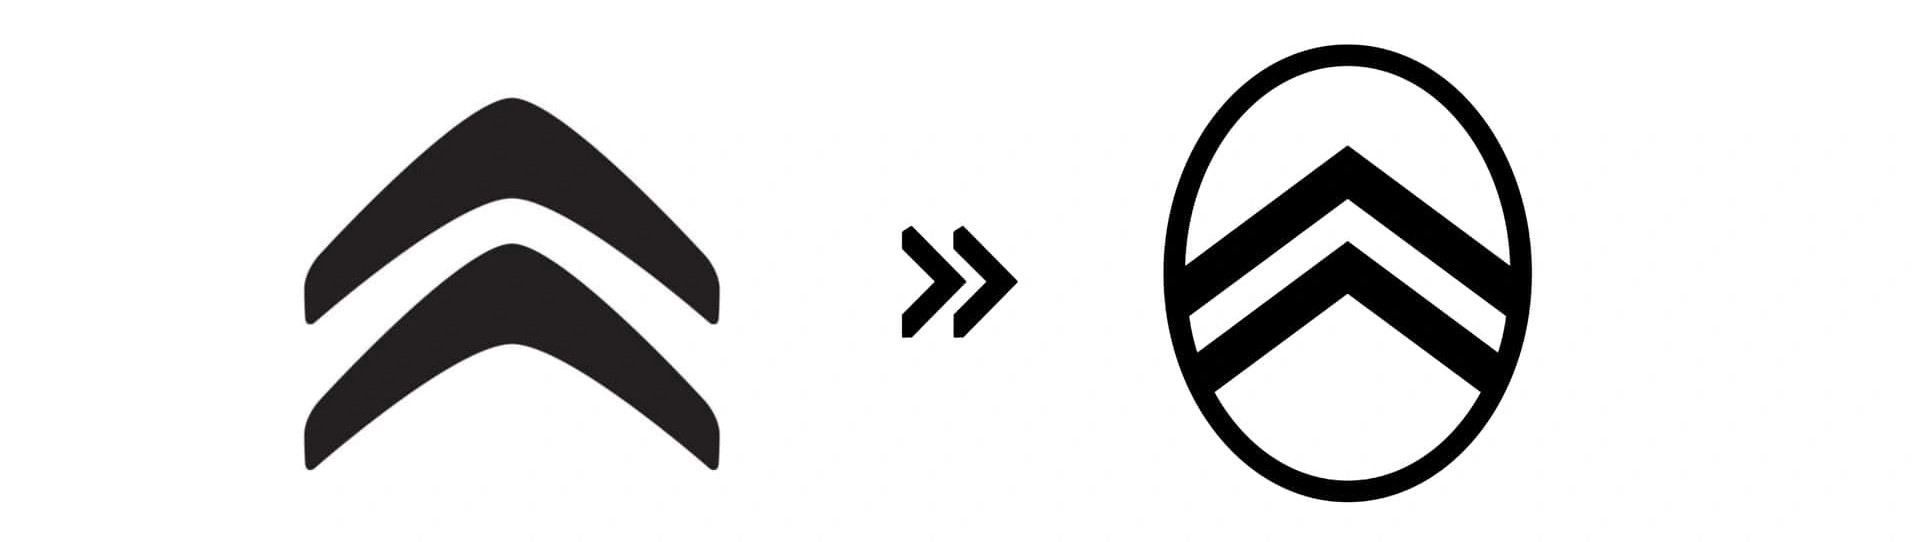 Citroen (2016): Citroen thay mới logo của mình vào năm 2016 - thời điểm các hãng xe quốc tế mới chuẩn bị đổi mới bộ mặt biểu tượng. Hình 2 mũi tên của họ giờ được duỗi thẳng và đặt trong một vòng bầu dục bao bên ngoài theo phong cách khá giống logo nguyên bản sử dụng vào năm 1919 - Ảnh: Motor1